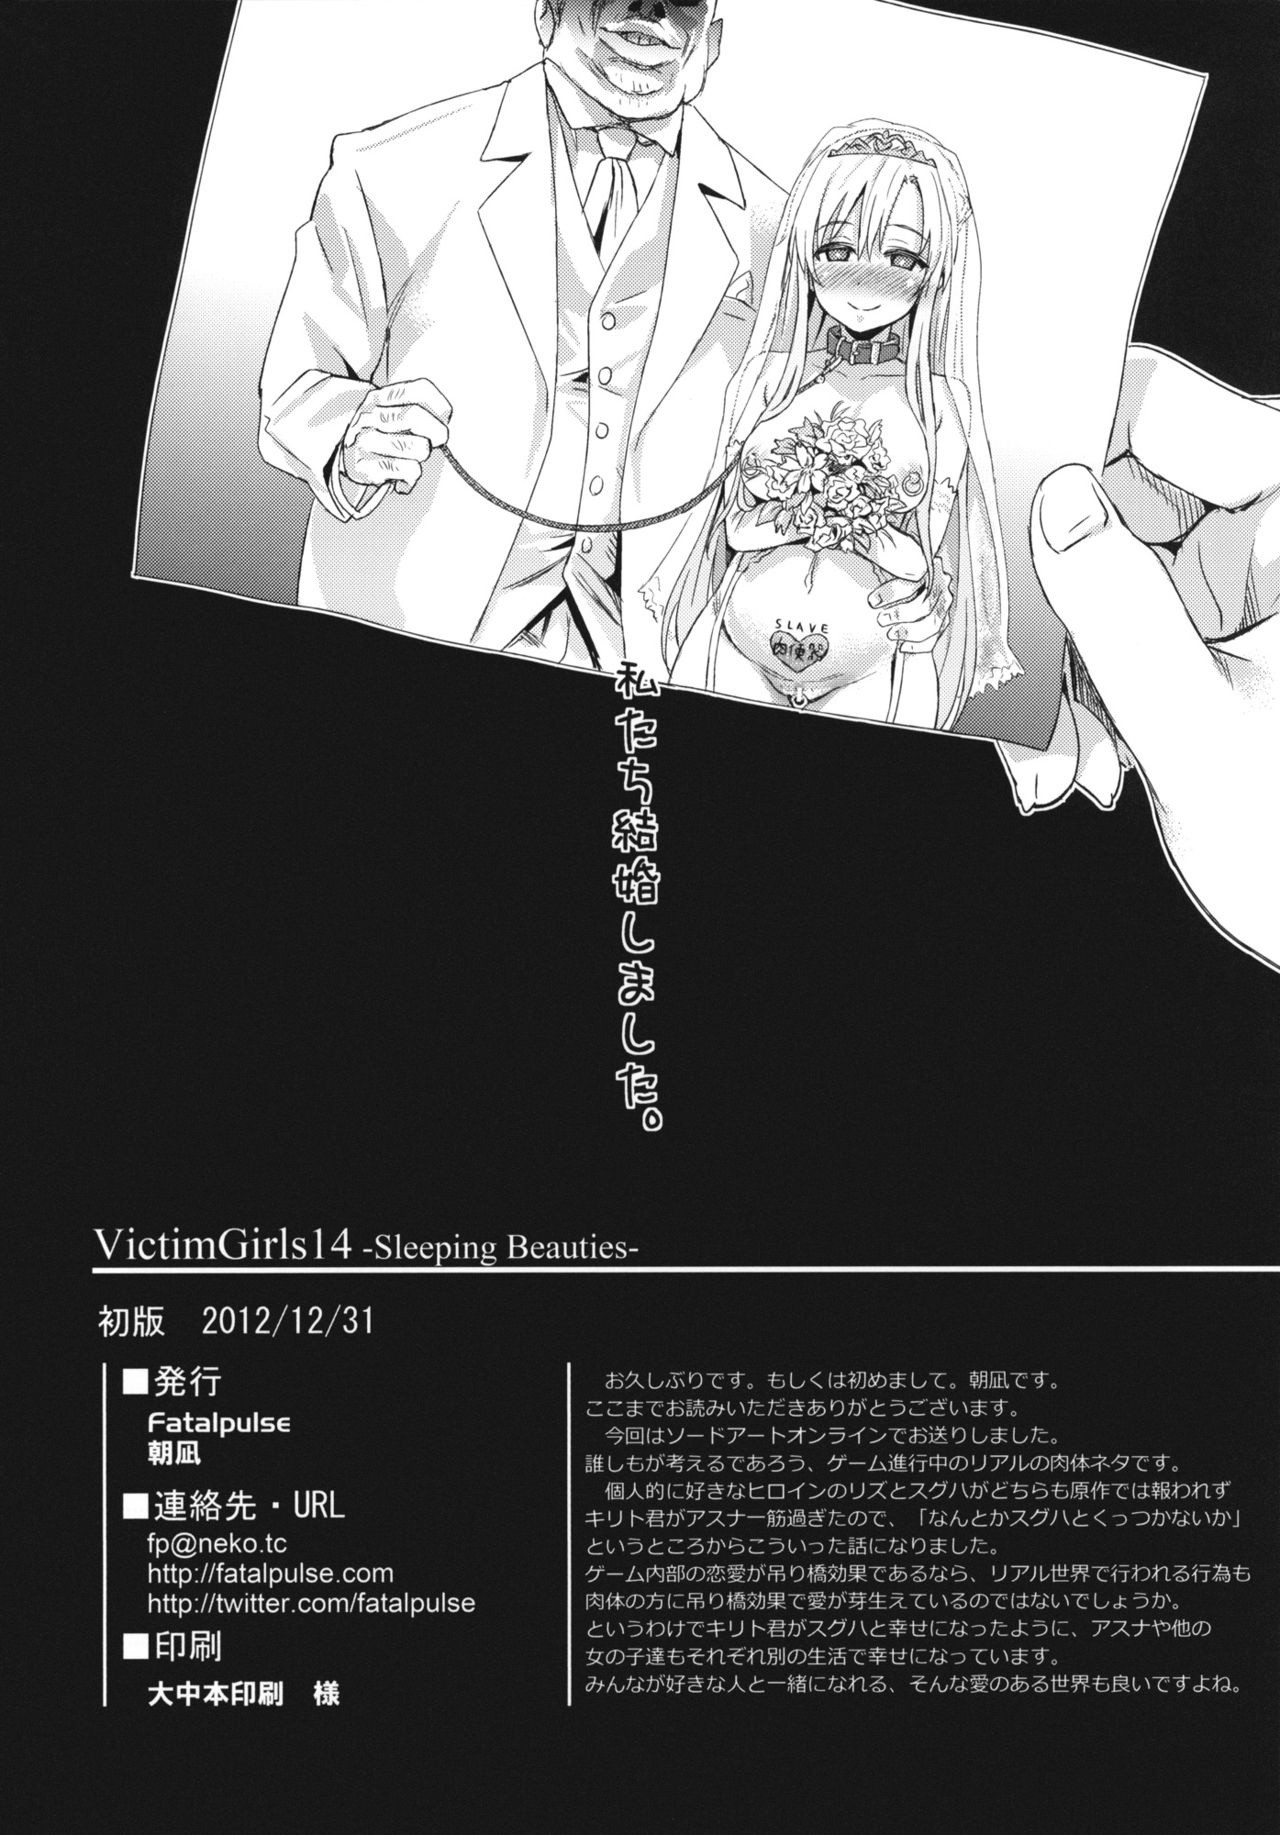 Victim Girls 14 - Sleeping Beauties hentai manga picture 20